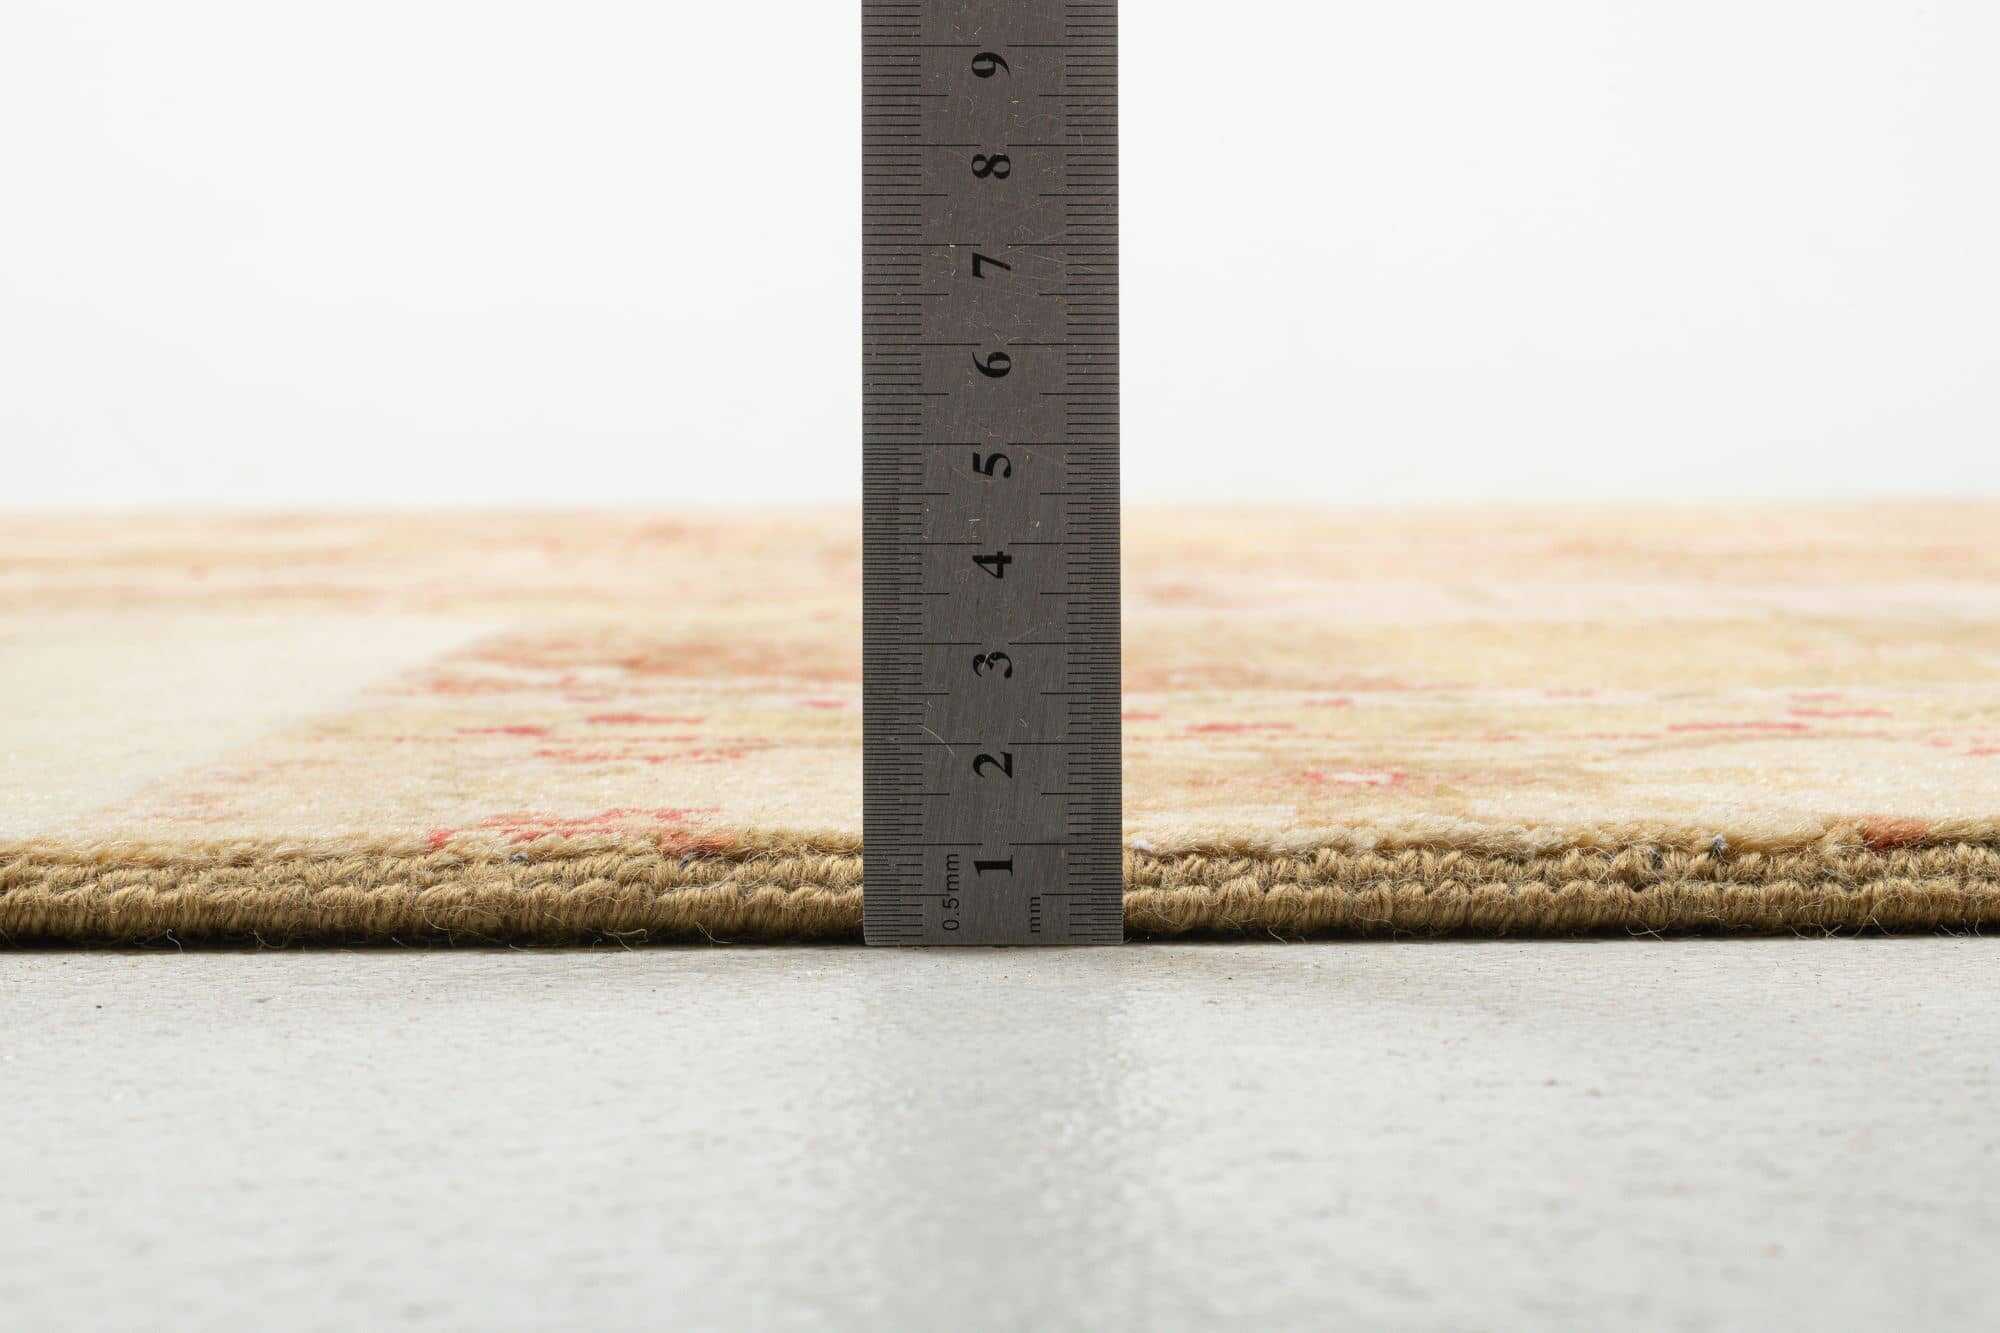 Patchwork Teppich PATCH Handgeknüpft beige-pink 250x300cm 